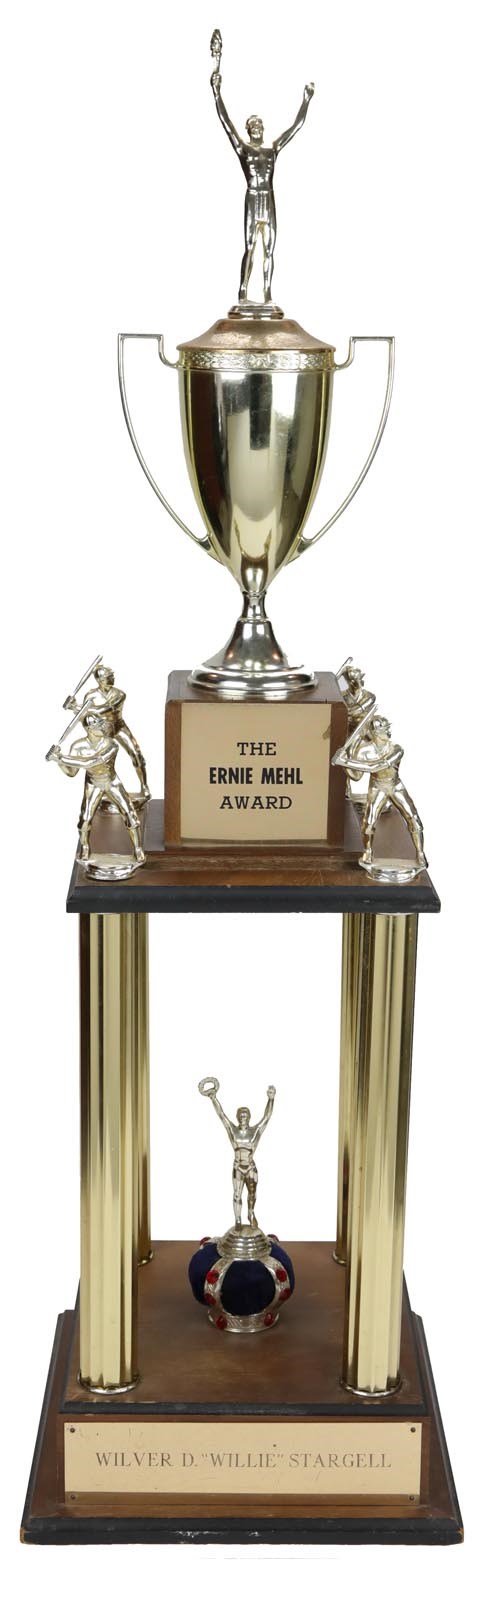 - 1978 Ernie Mehl Award Presented to Willie Stargell